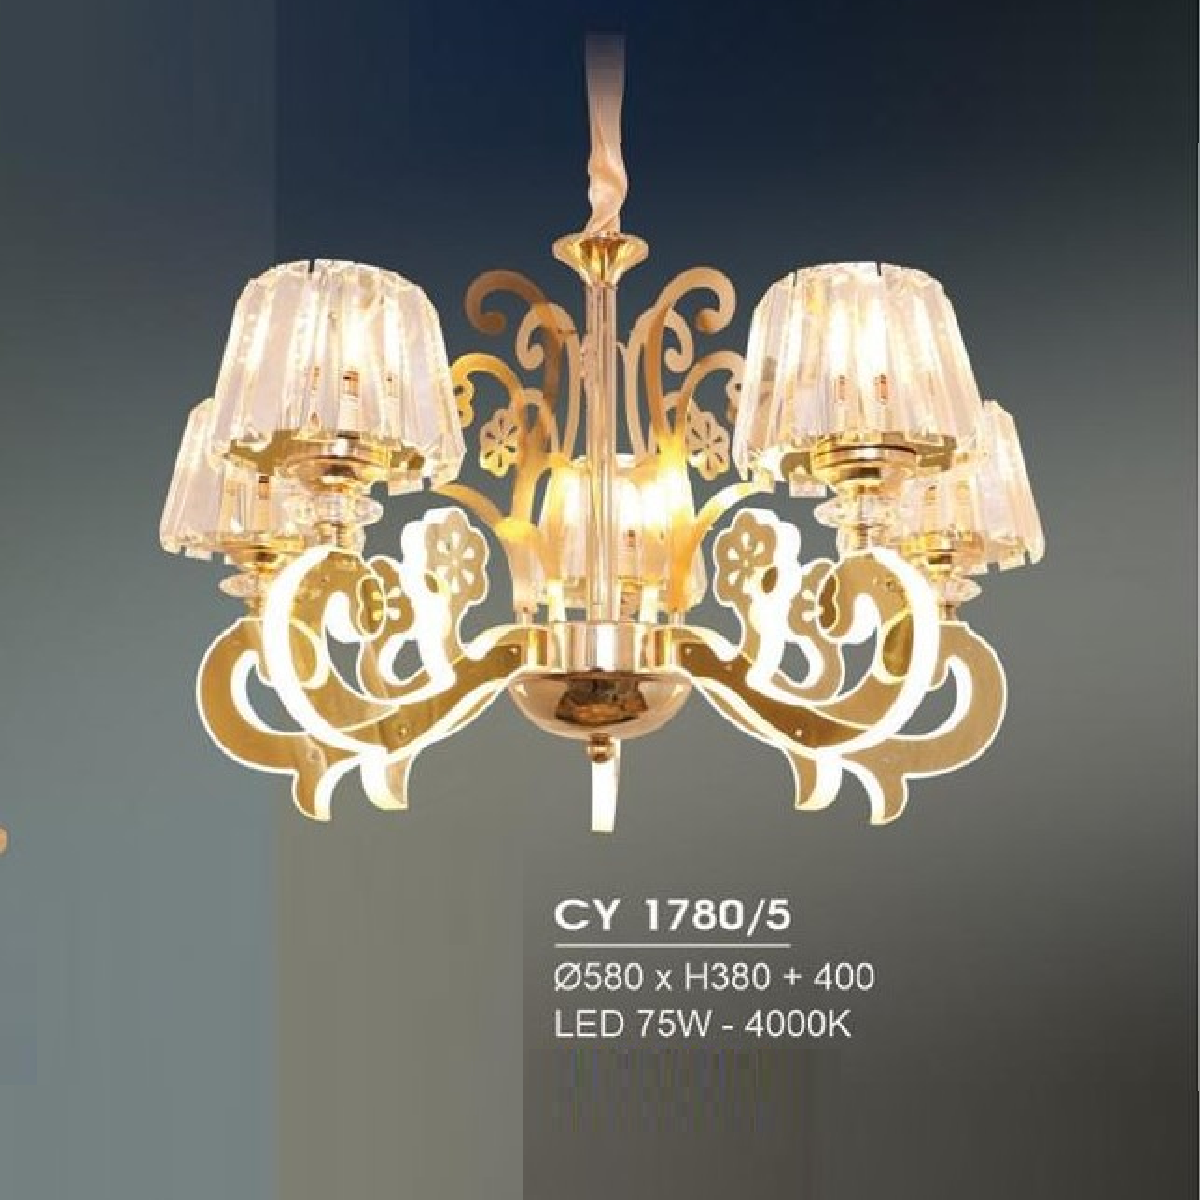 HF - CY 1780/5 : Đèn chùm LED 5 tay 75W ánh sáng vàng 4000K, KT: Ø580mm*H380mm+400mm